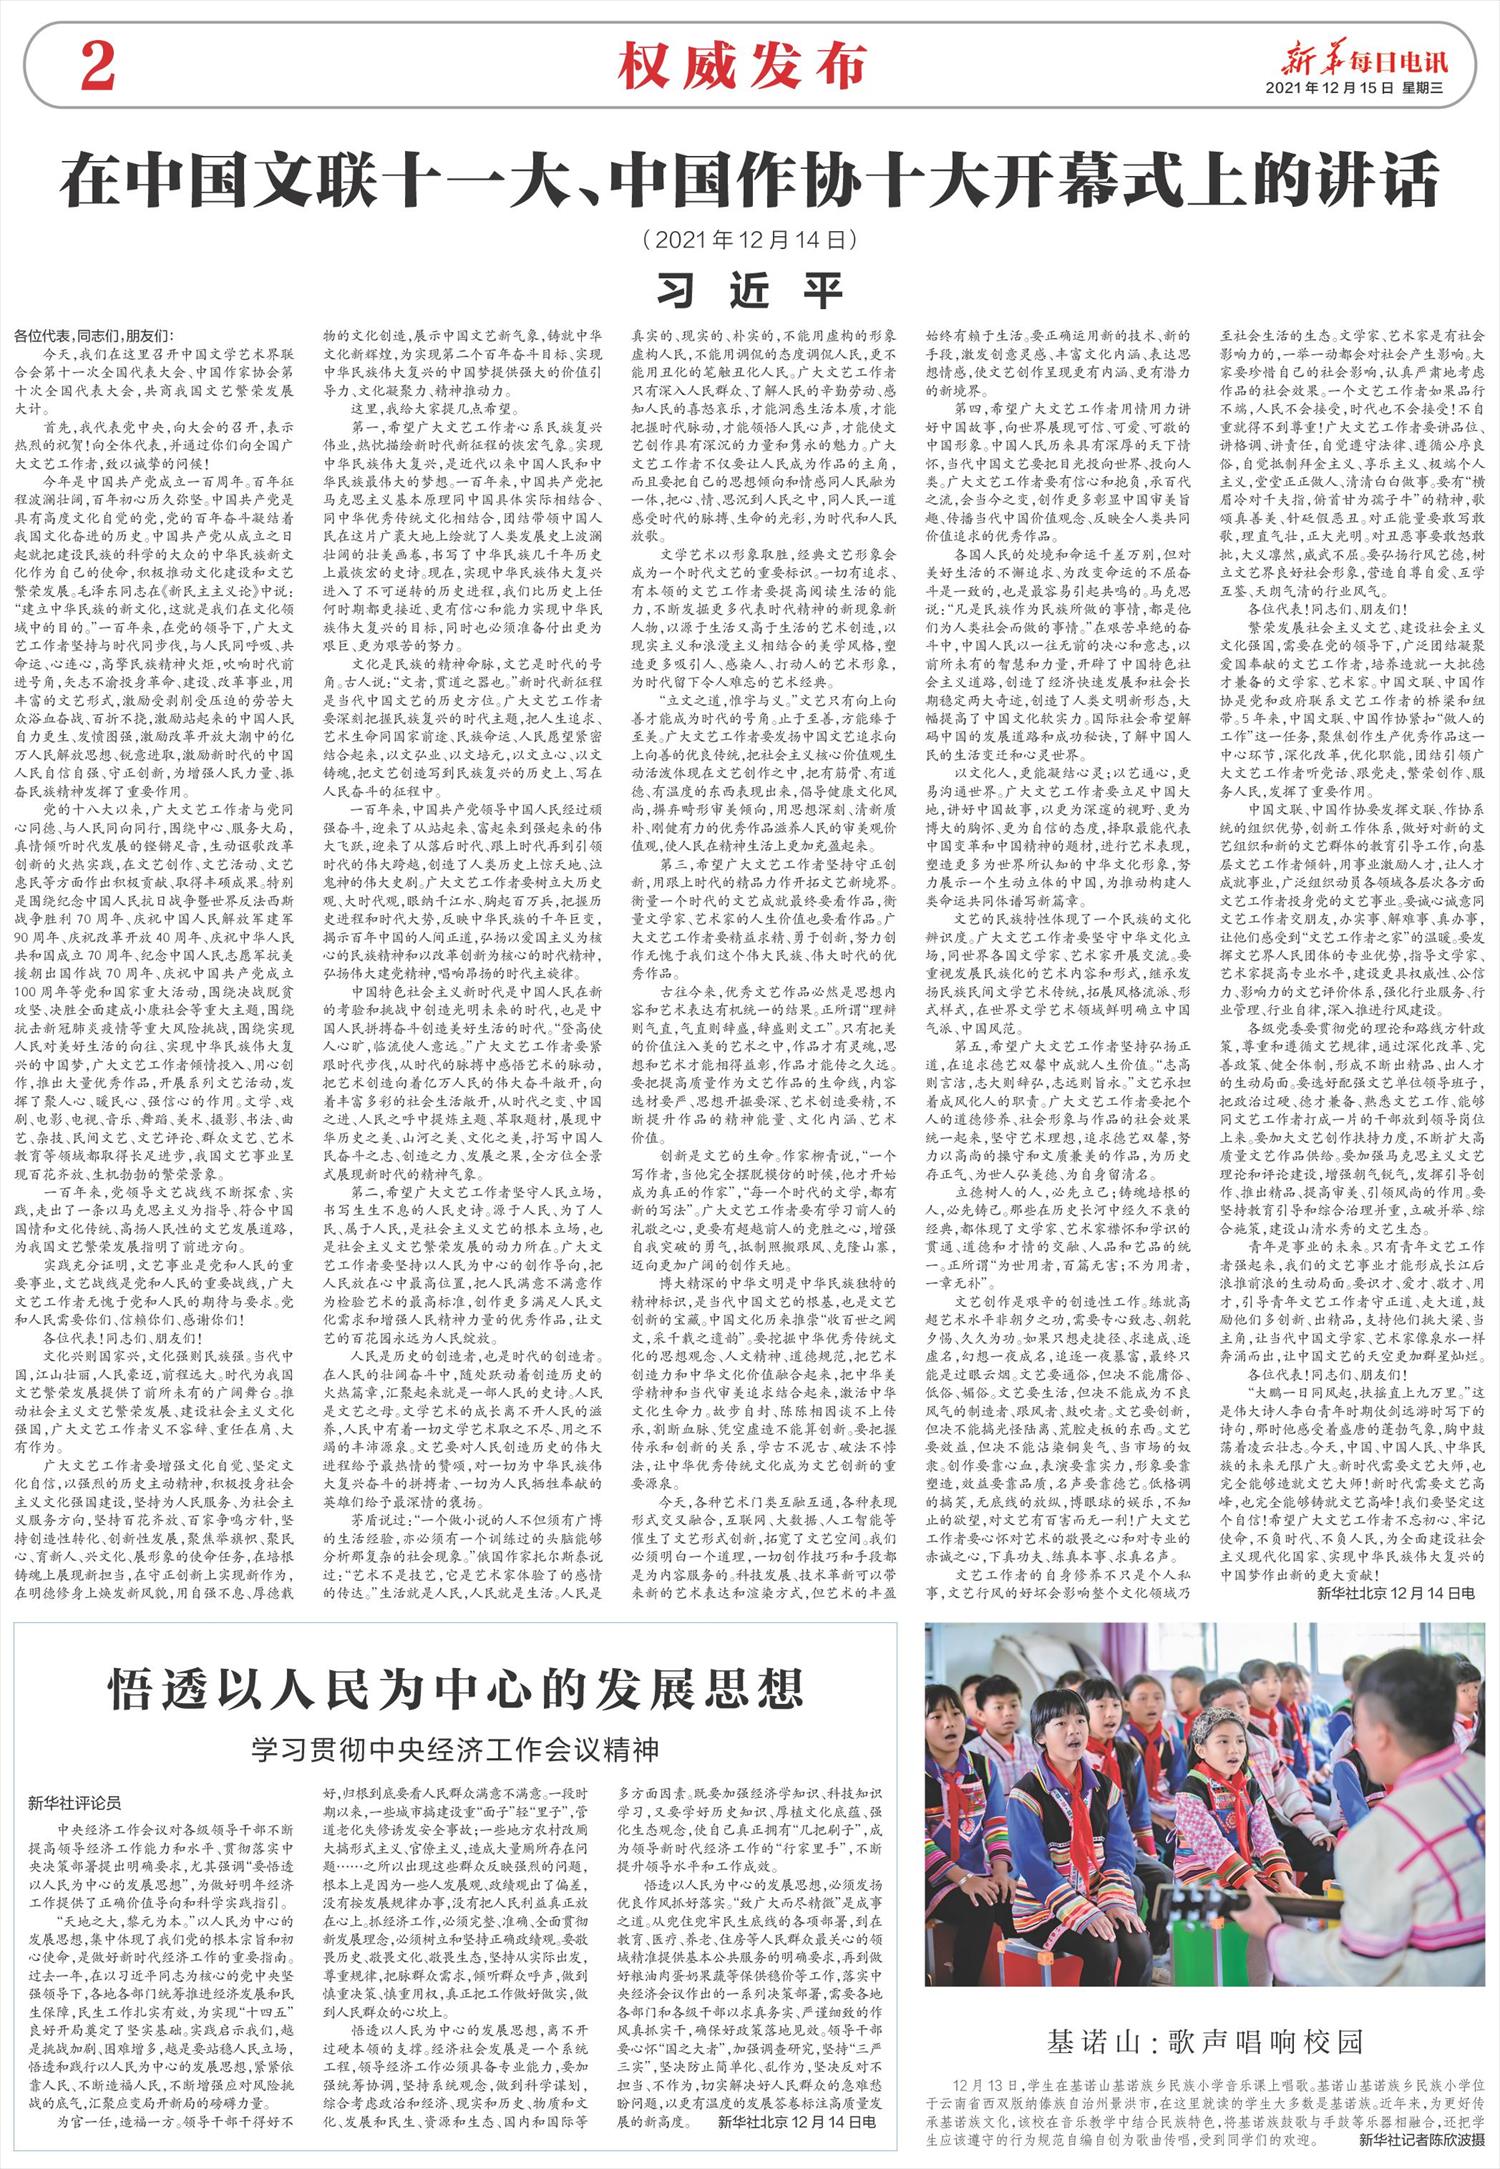 新华每日电讯-微报纸-2021年12月15日